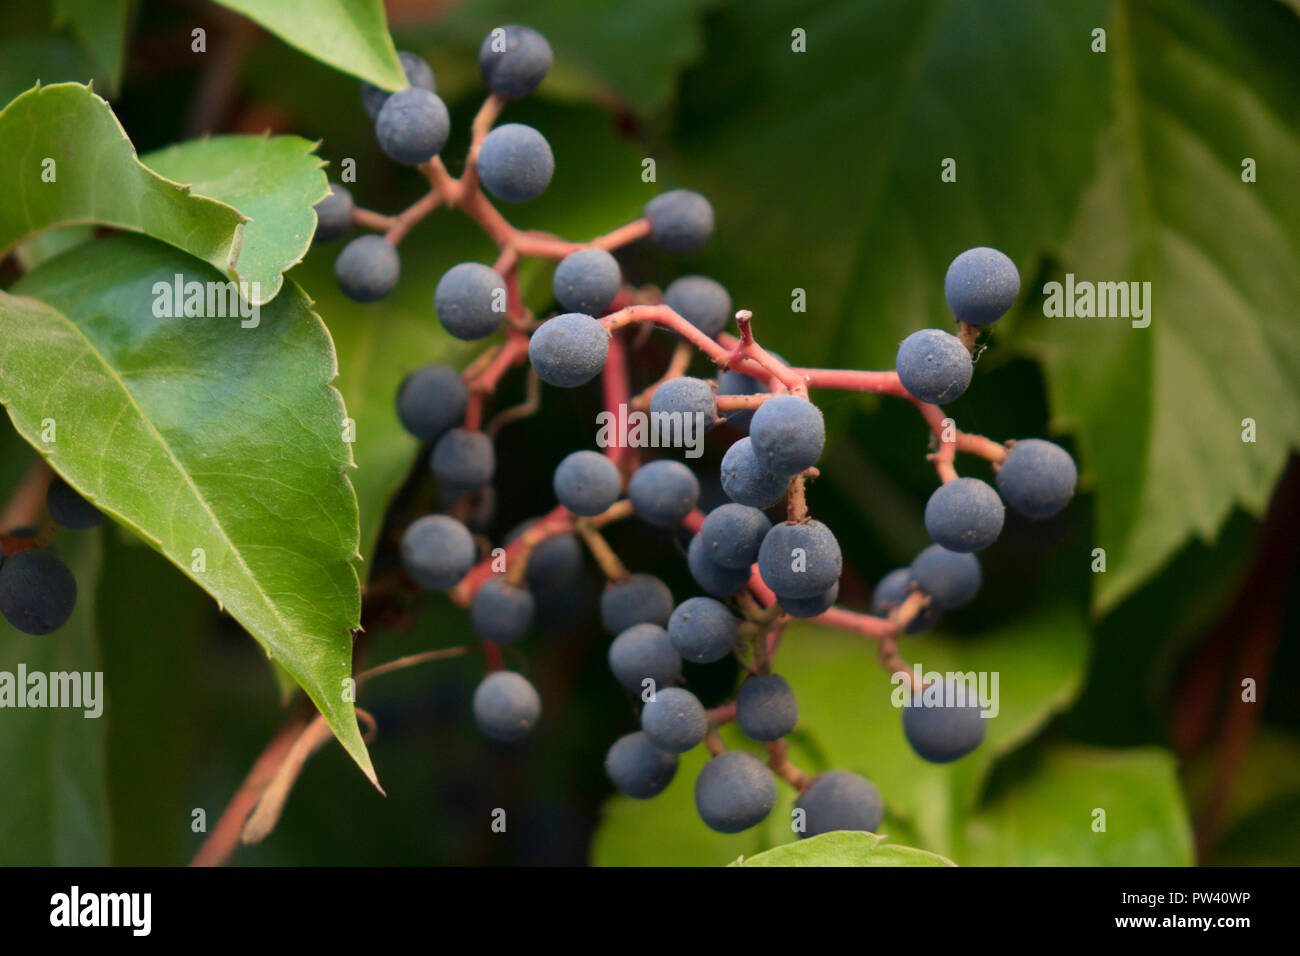 fruits of Virginia creeper, Parthenocissus quinquefolia Stock Photo